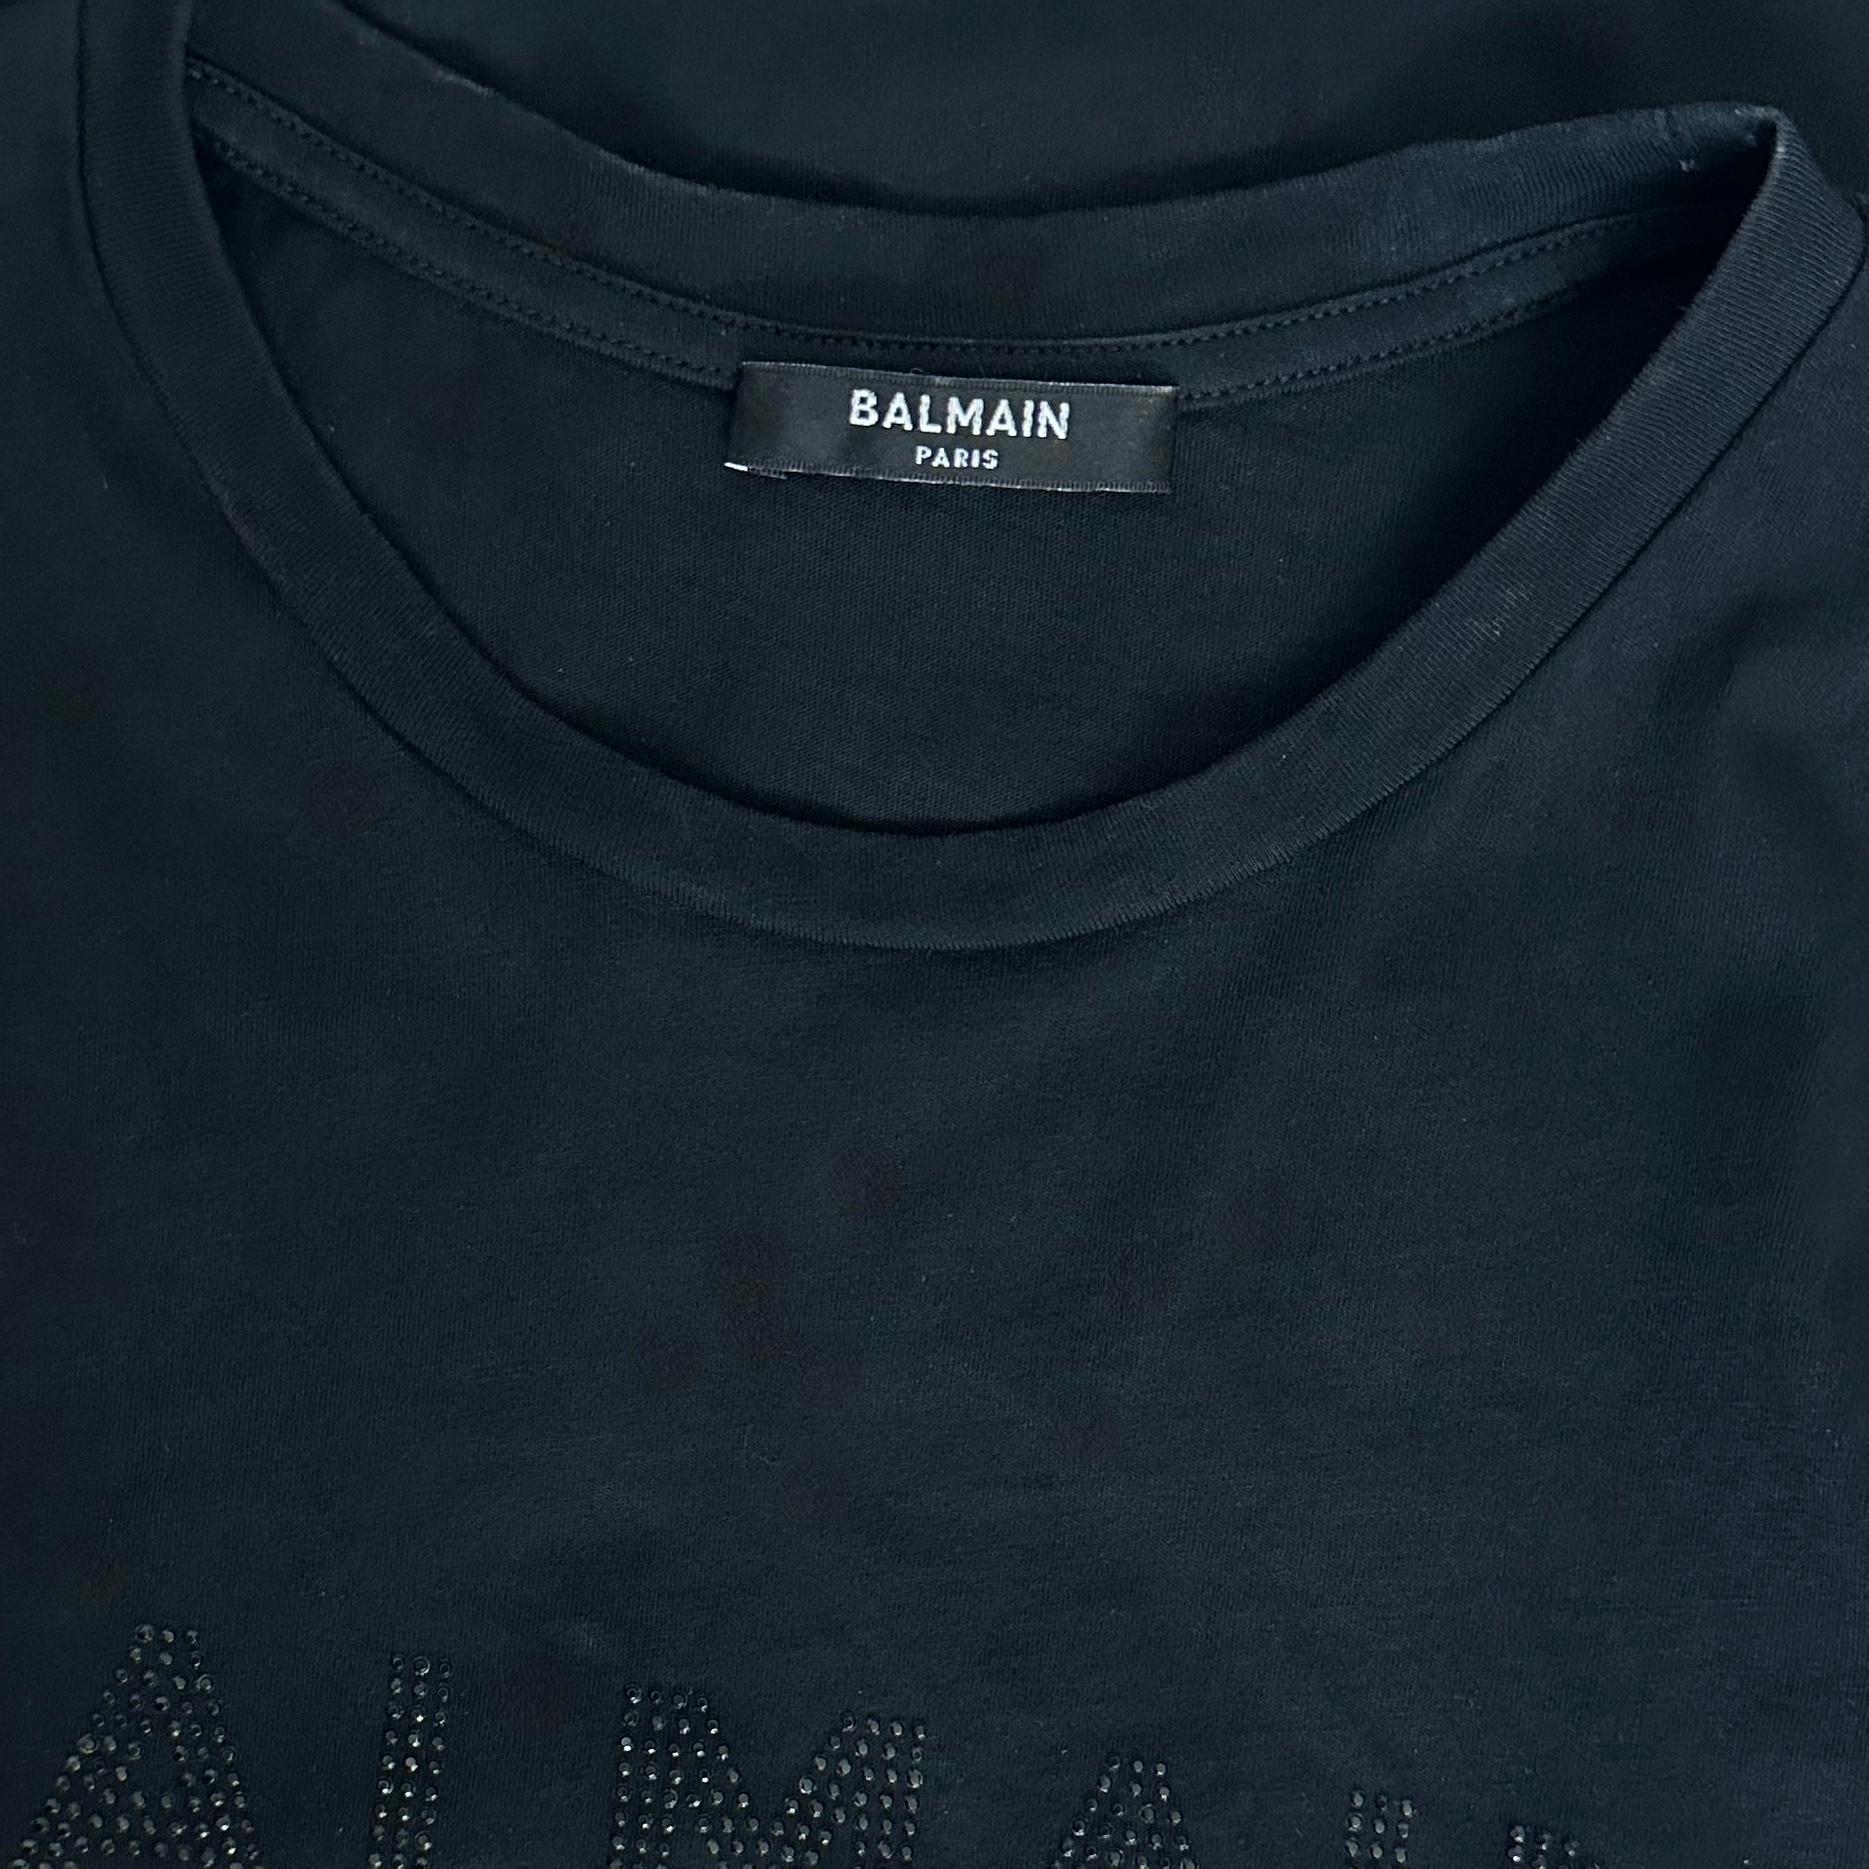 BALMAIN PARIS Black T-Shirt Top Embellishment Cap Sleeve Crew Neck Cotton XS For Sale 2